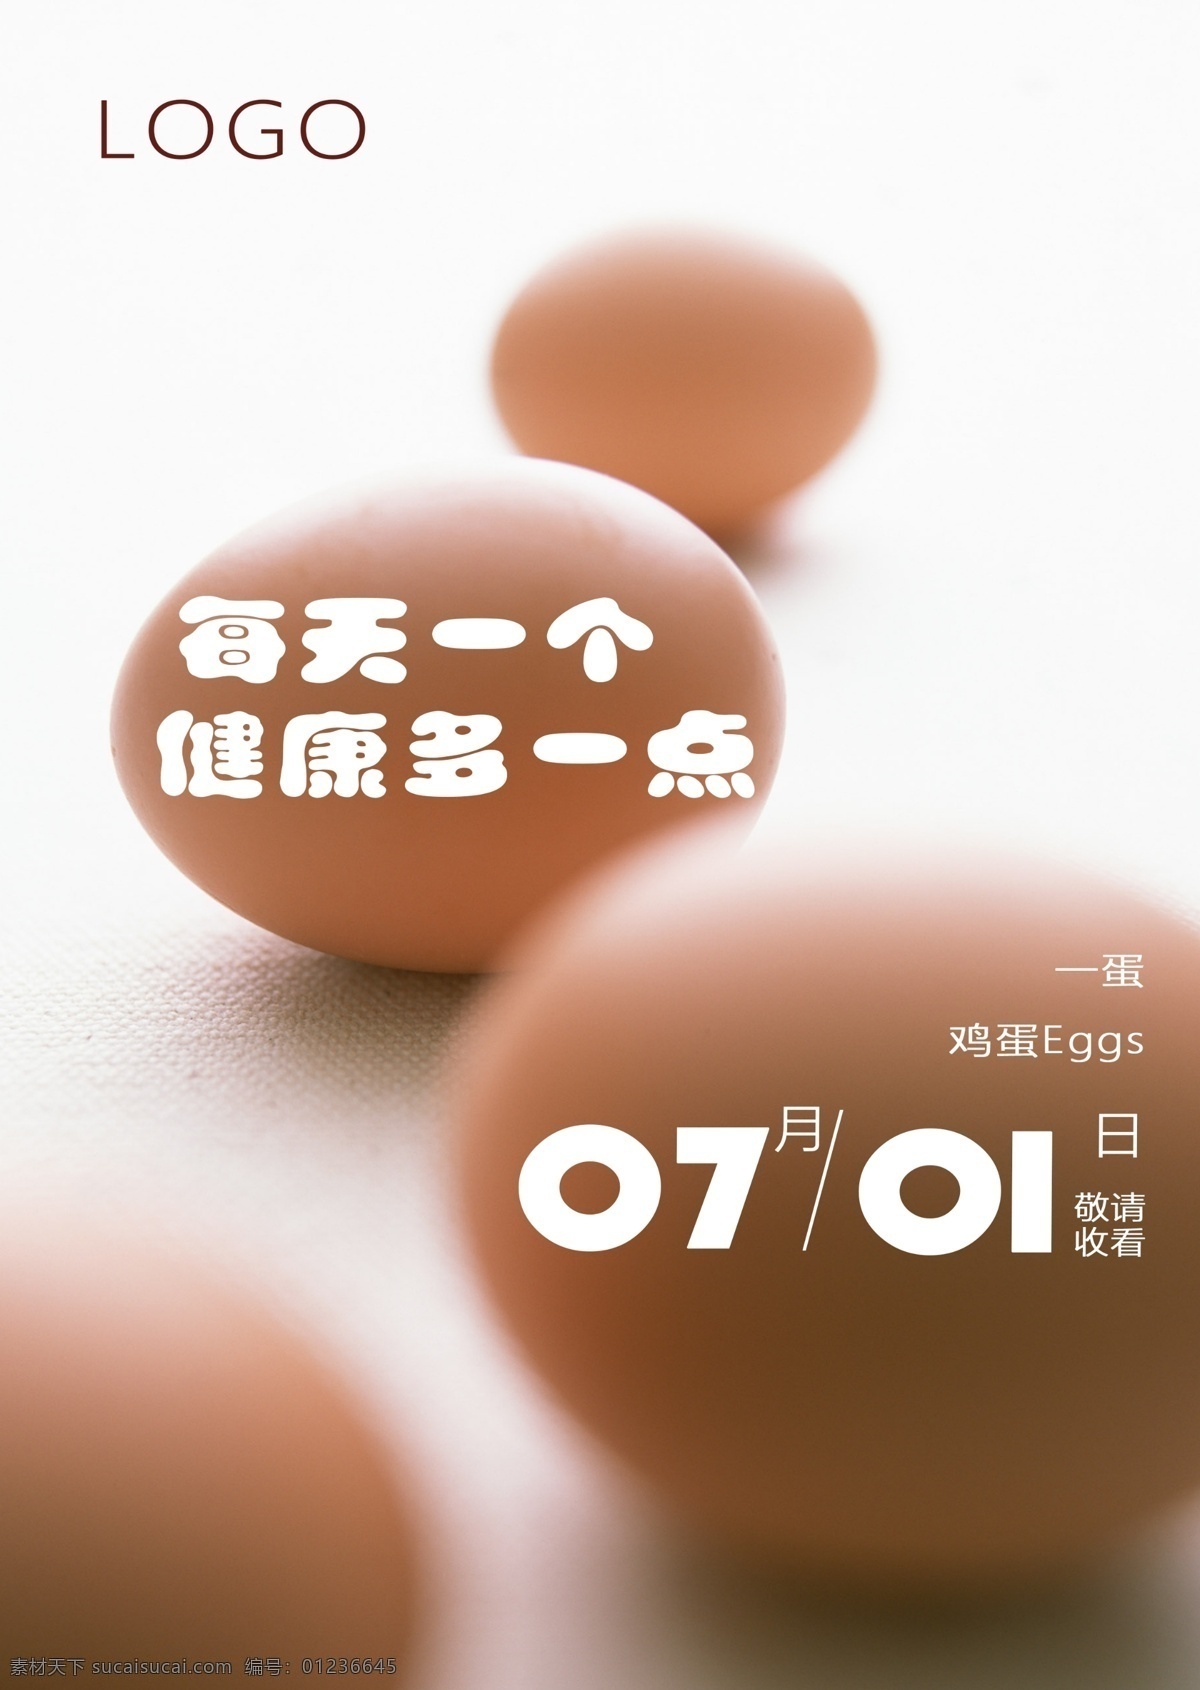 鸡蛋海报 鸡蛋 蛋 食品 食材 海报 广告 三脚架源文件 元素 时间 预告海报 背景